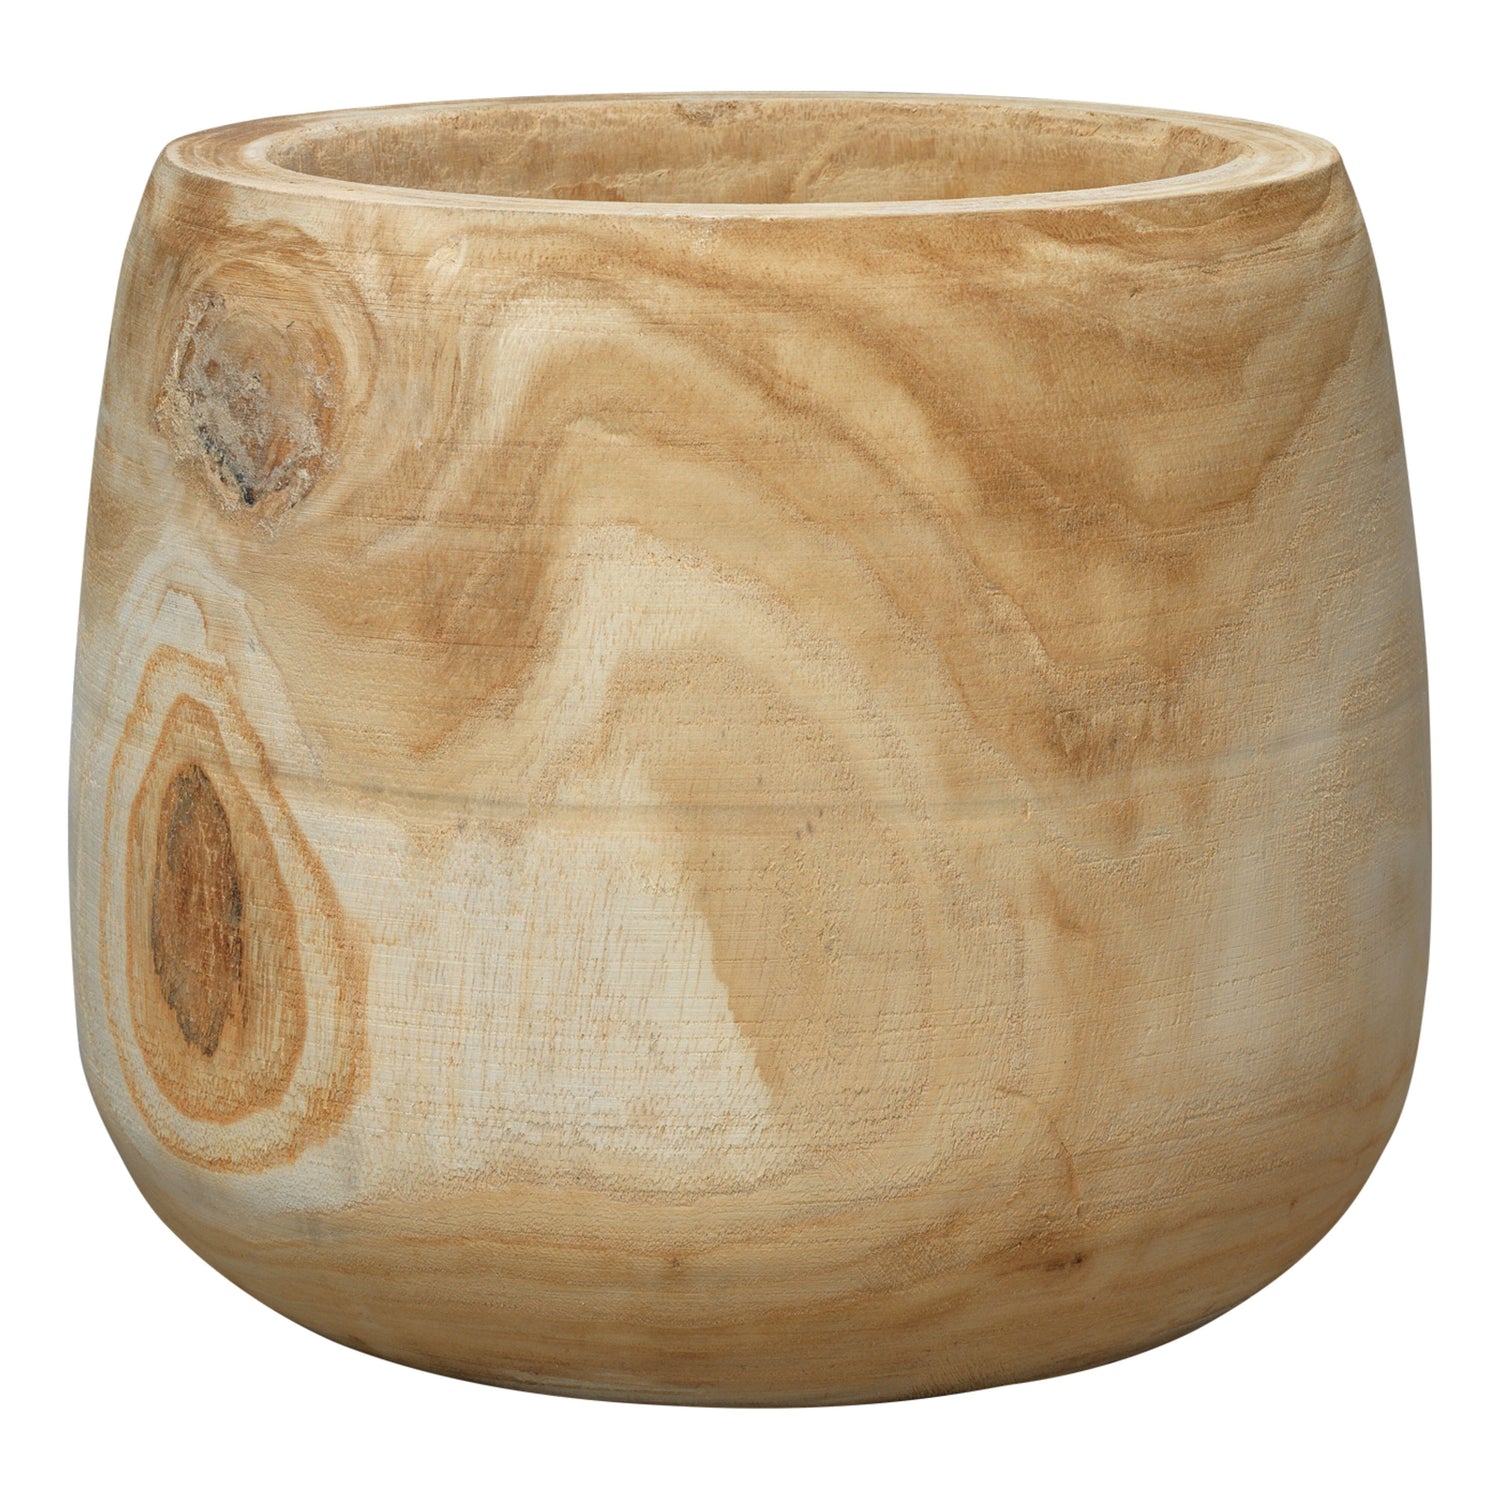 Jamie Young Company - 7BREA-VAWD - Brea Wooden Vase - Brea - Brown